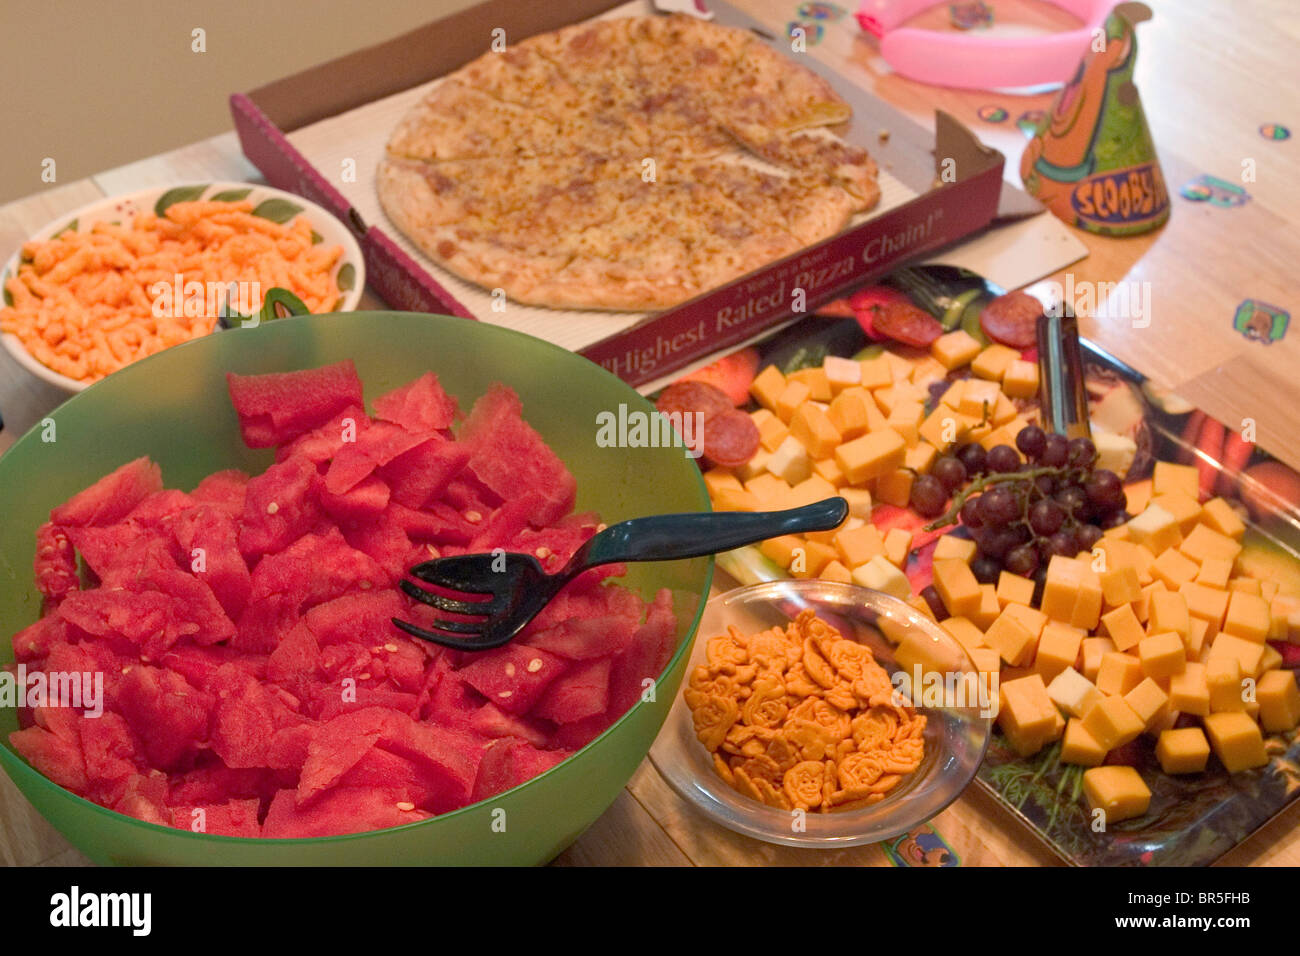 Food at a birthday party in Atlanta GA. Stock Photo